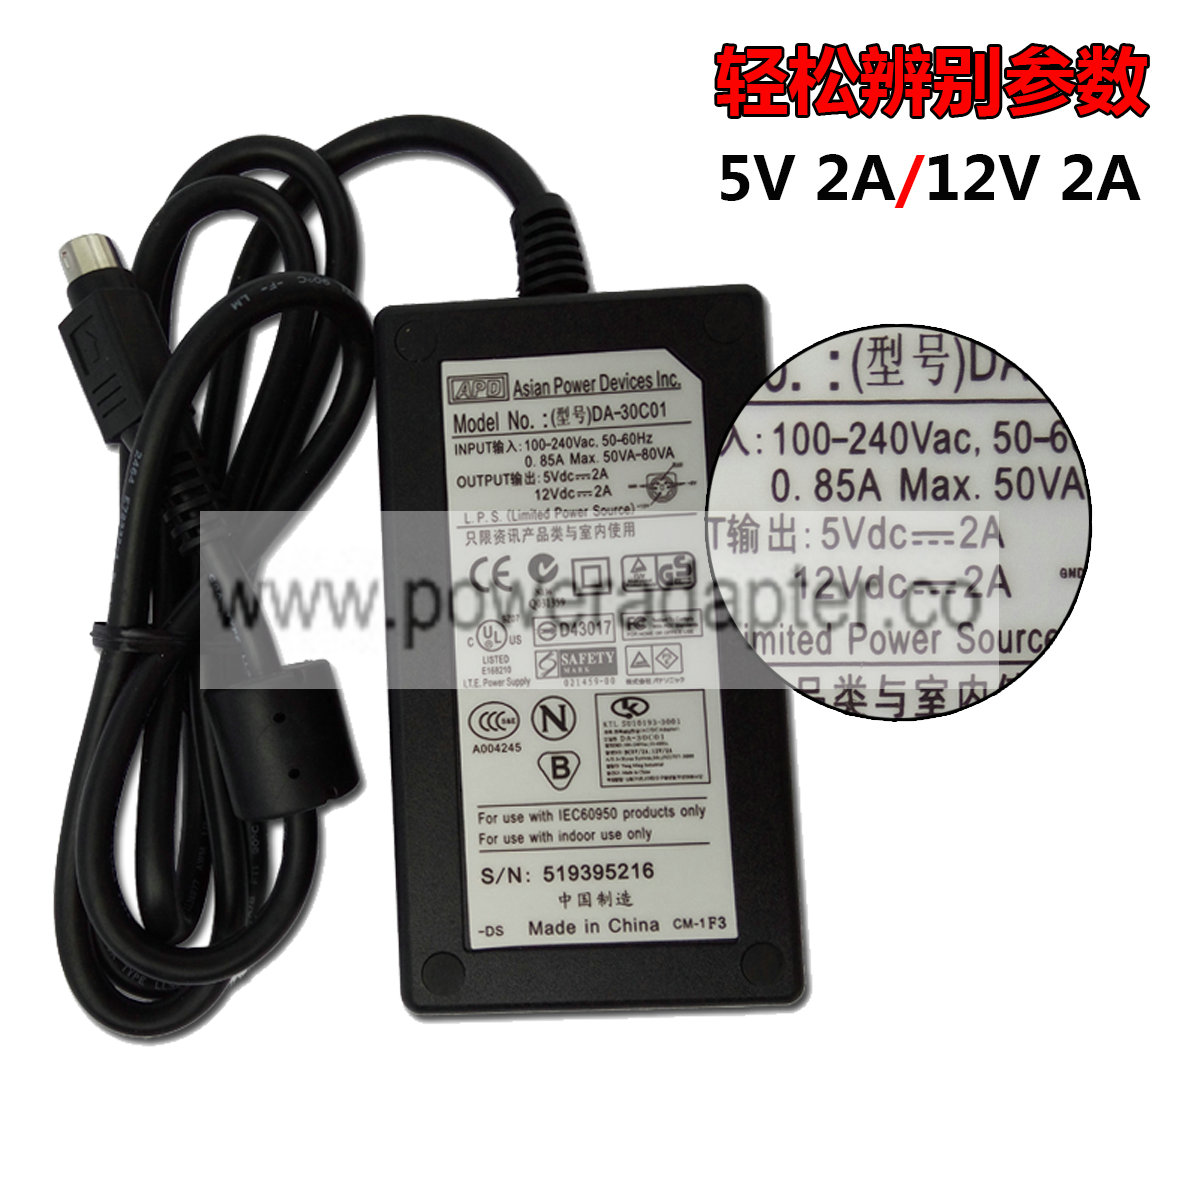 new original APD 12V 2A 5V 2A 5 pin AC Power Adapter DA-30C01 Bundled Items: Power Cable MPN: PWR-002-004 Output V